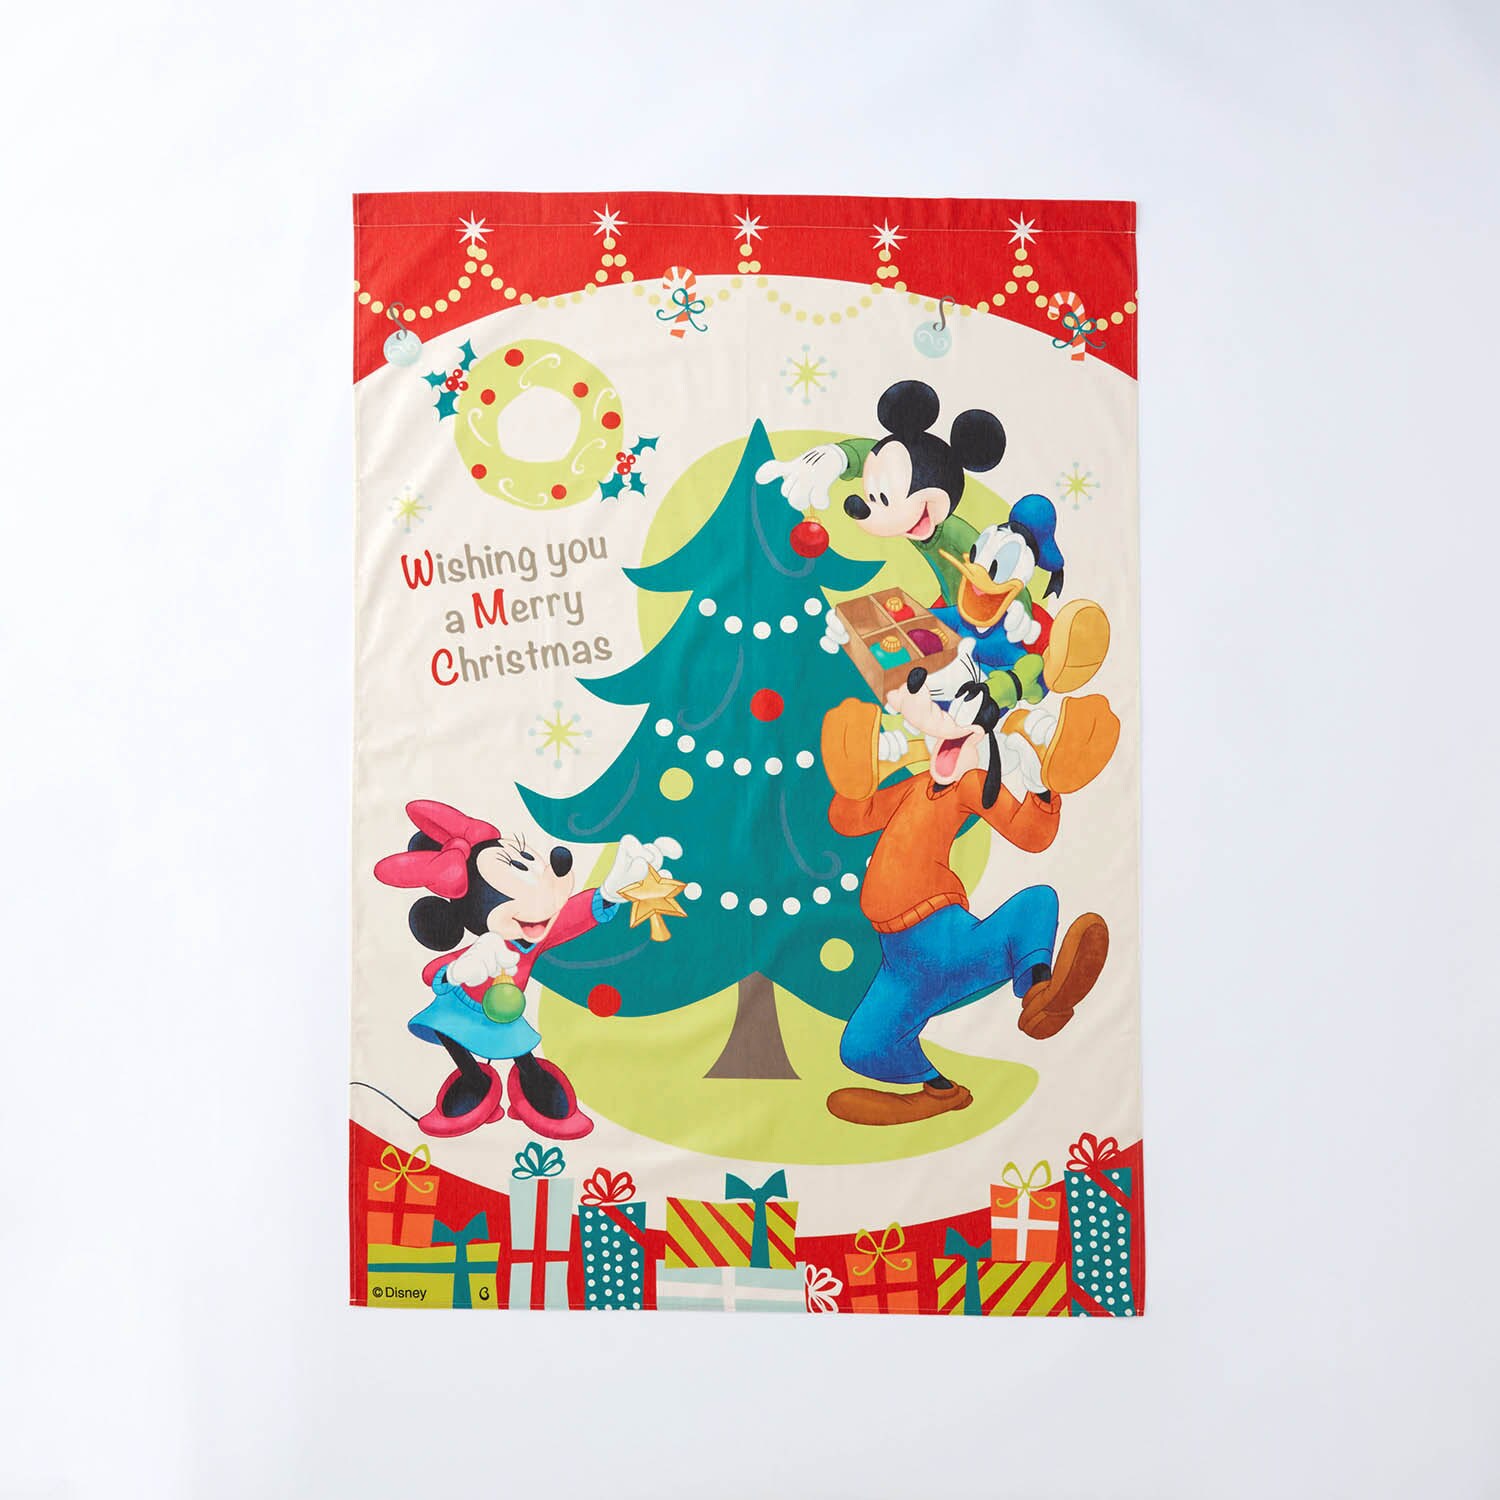 【ディズニー/Disney】ぬいぐるみをつけても可愛い!クリスマスタペストリー(選べるキャラクター)